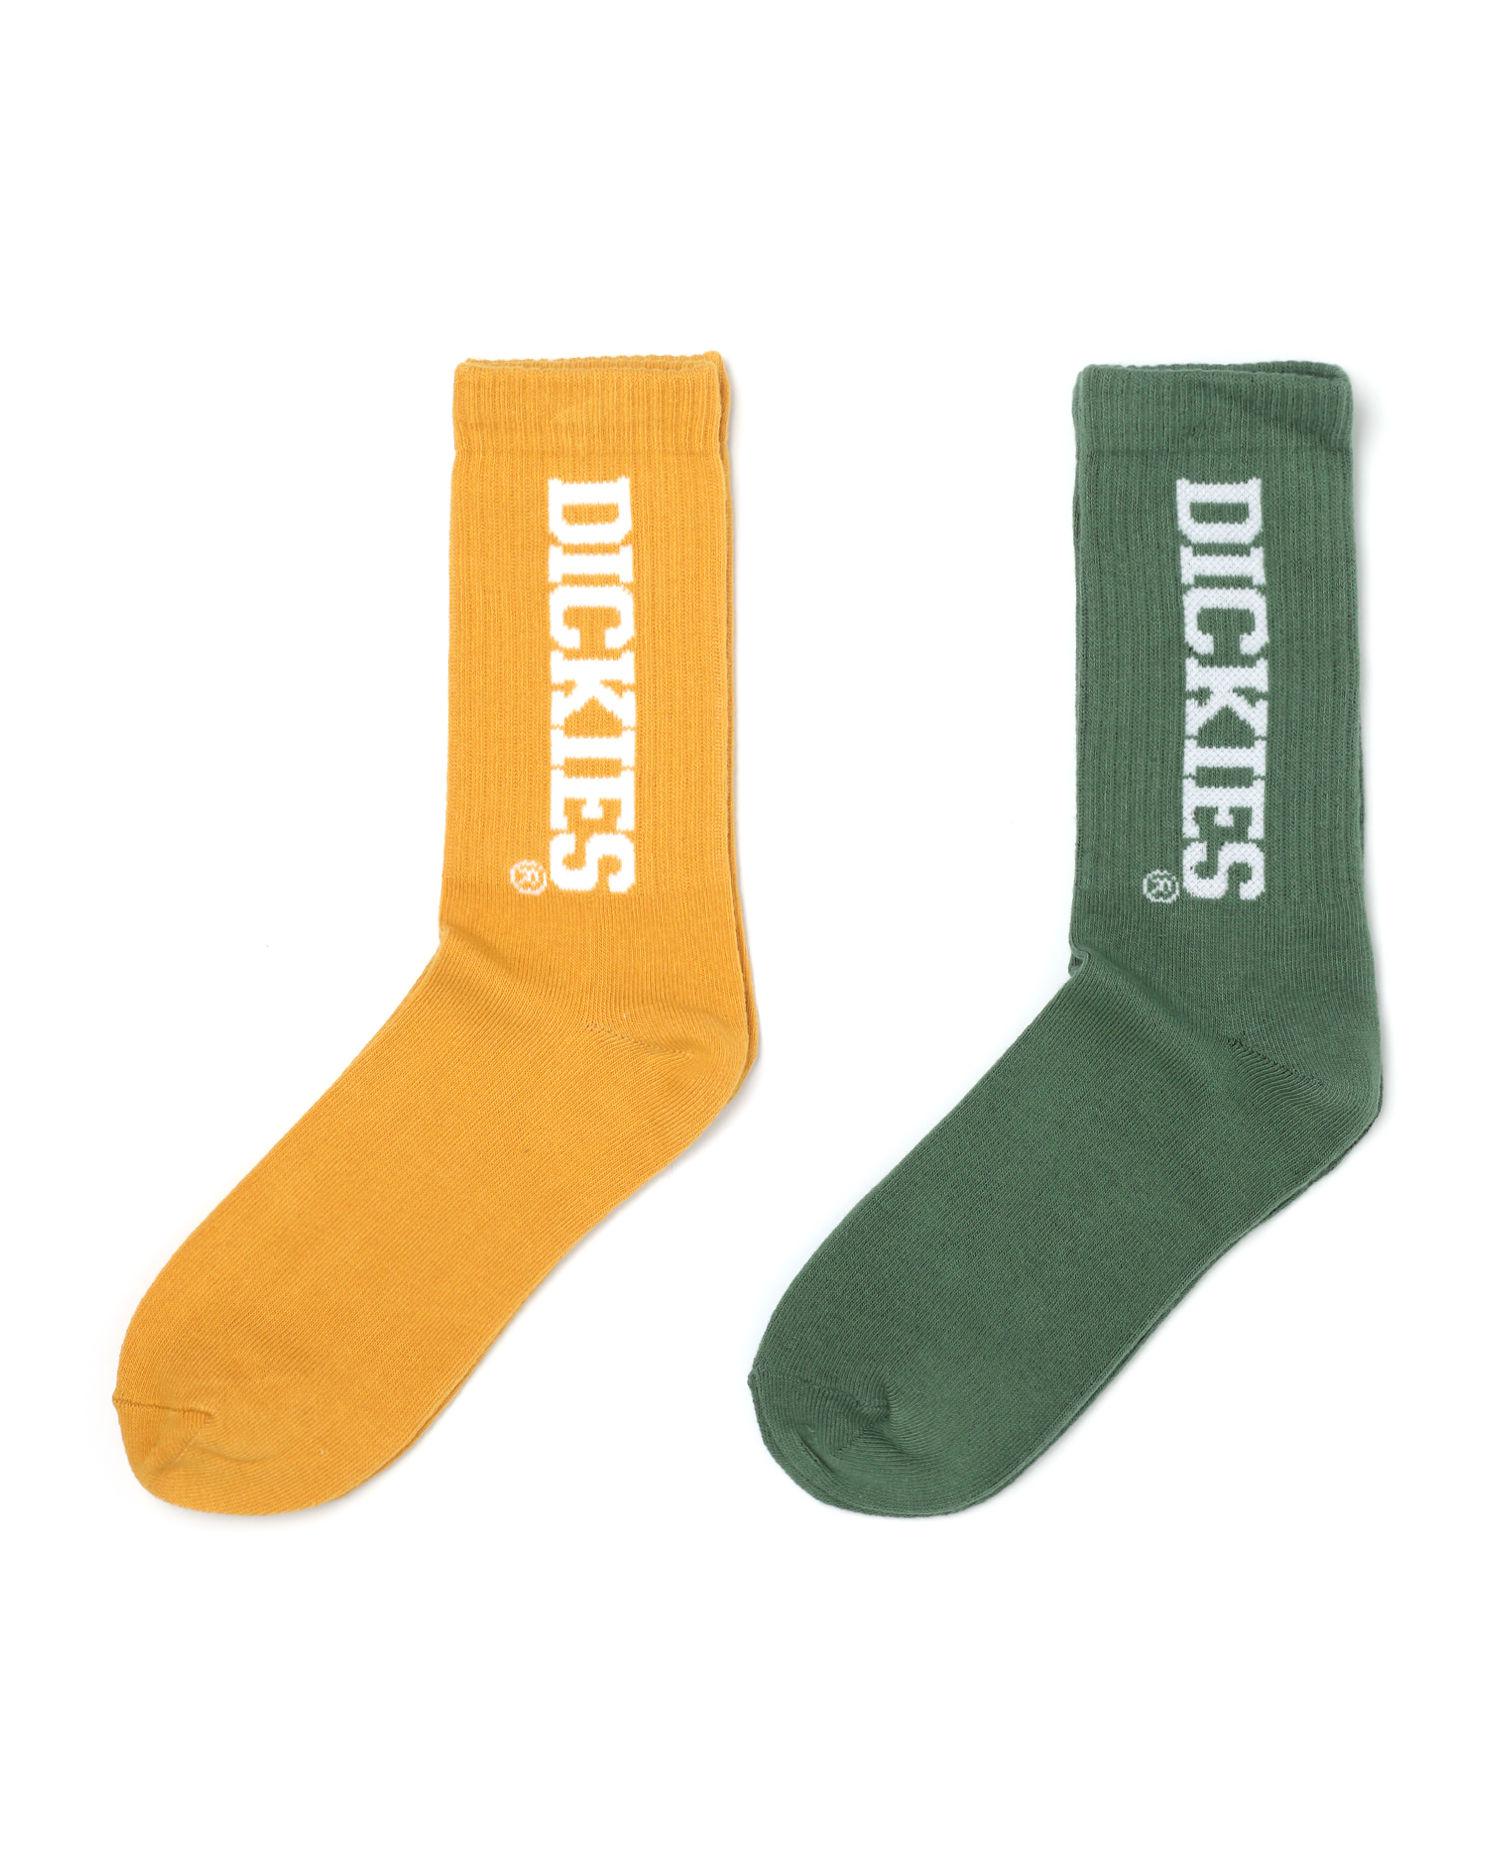 Logo socks - 2 pack by DICKIES